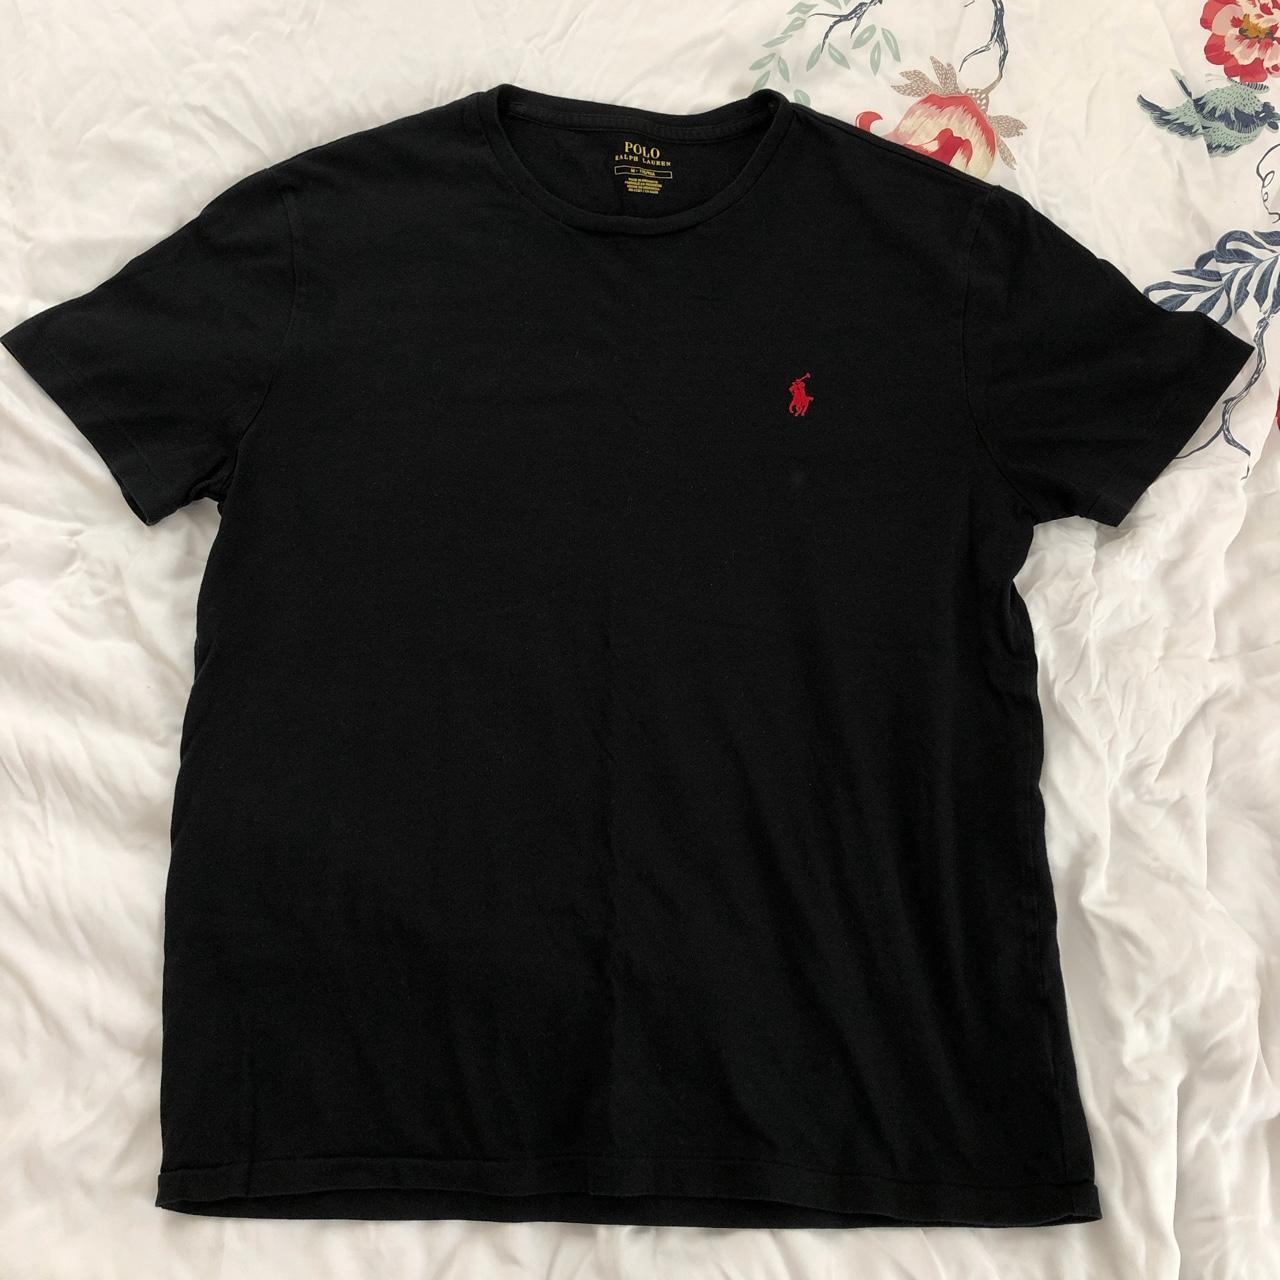 Black Ralph Lauren t-shirt. Very soft! #RalphLauren - Depop